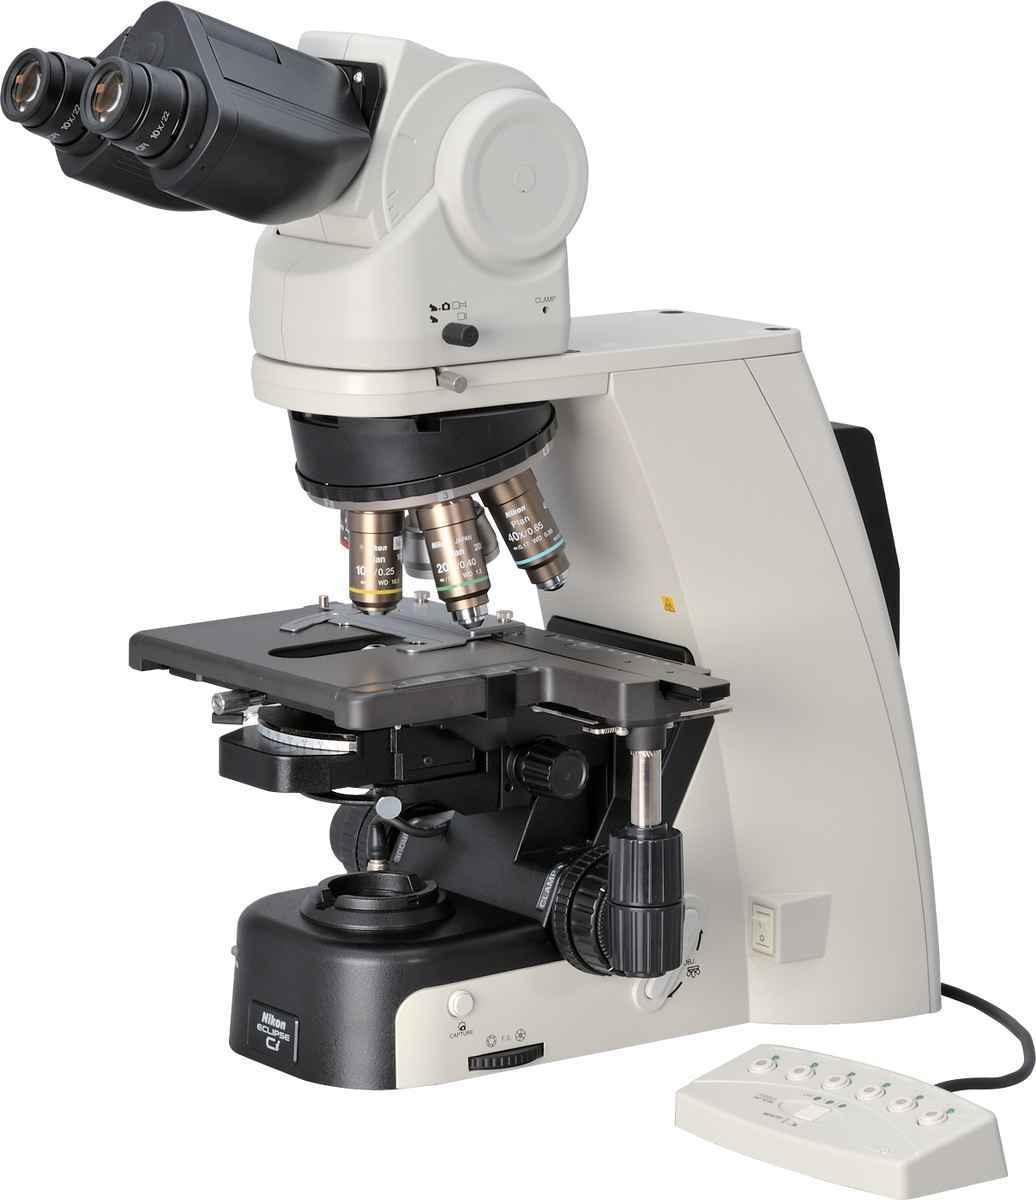 尼康ECLIPSE Ci正置显微镜的图片